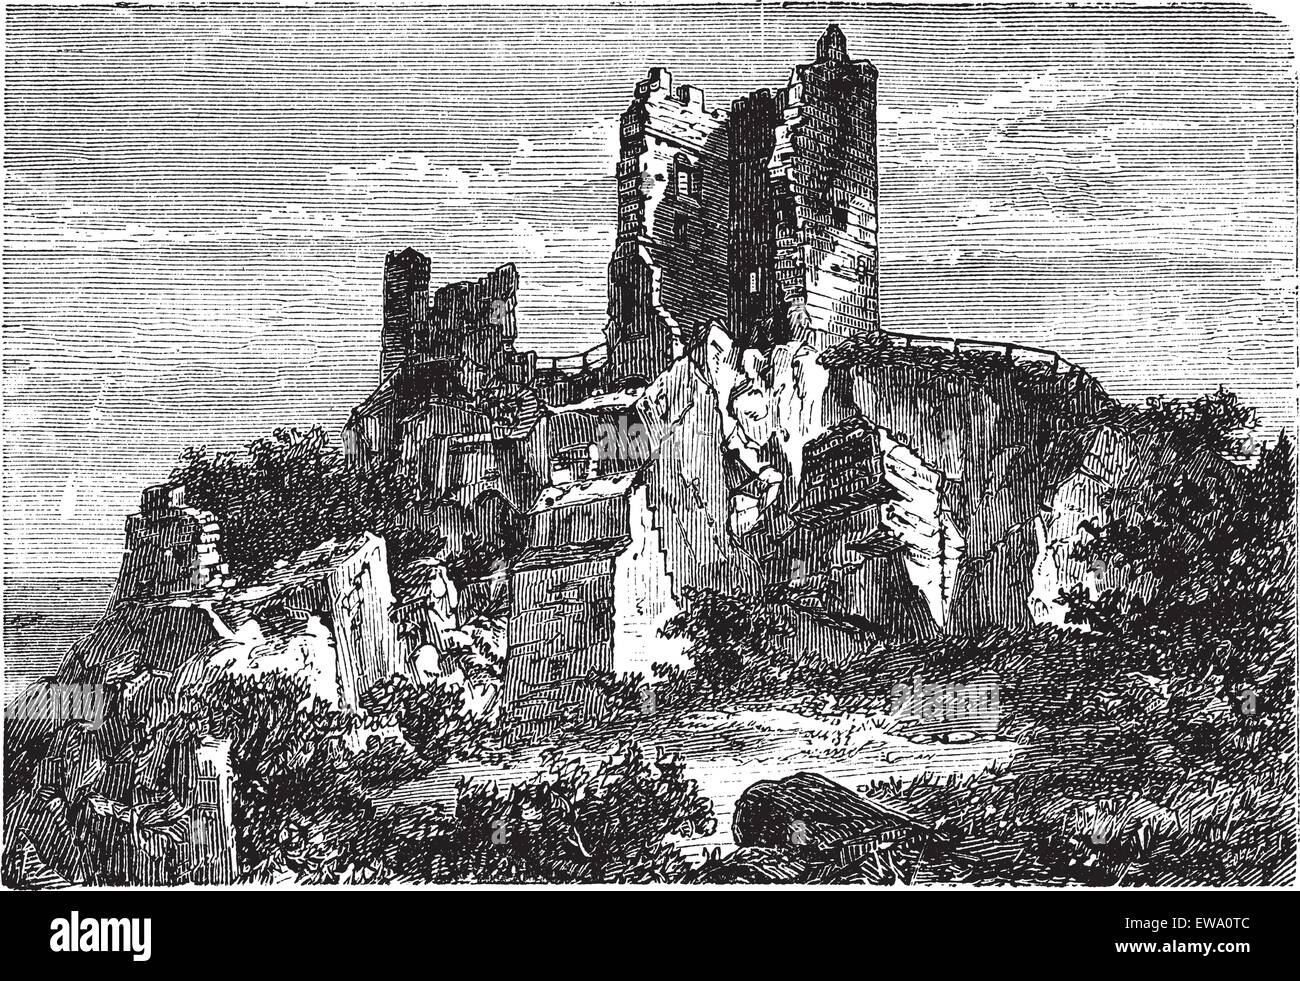 Burgruine Drachenfels Schloss in Rheinland-Pfalz, Deutschland, in den 1890er Jahren, vintage Gravur. Alte eingravierte Darstellung der Ruine der Burg Drachenfels. Stock Vektor